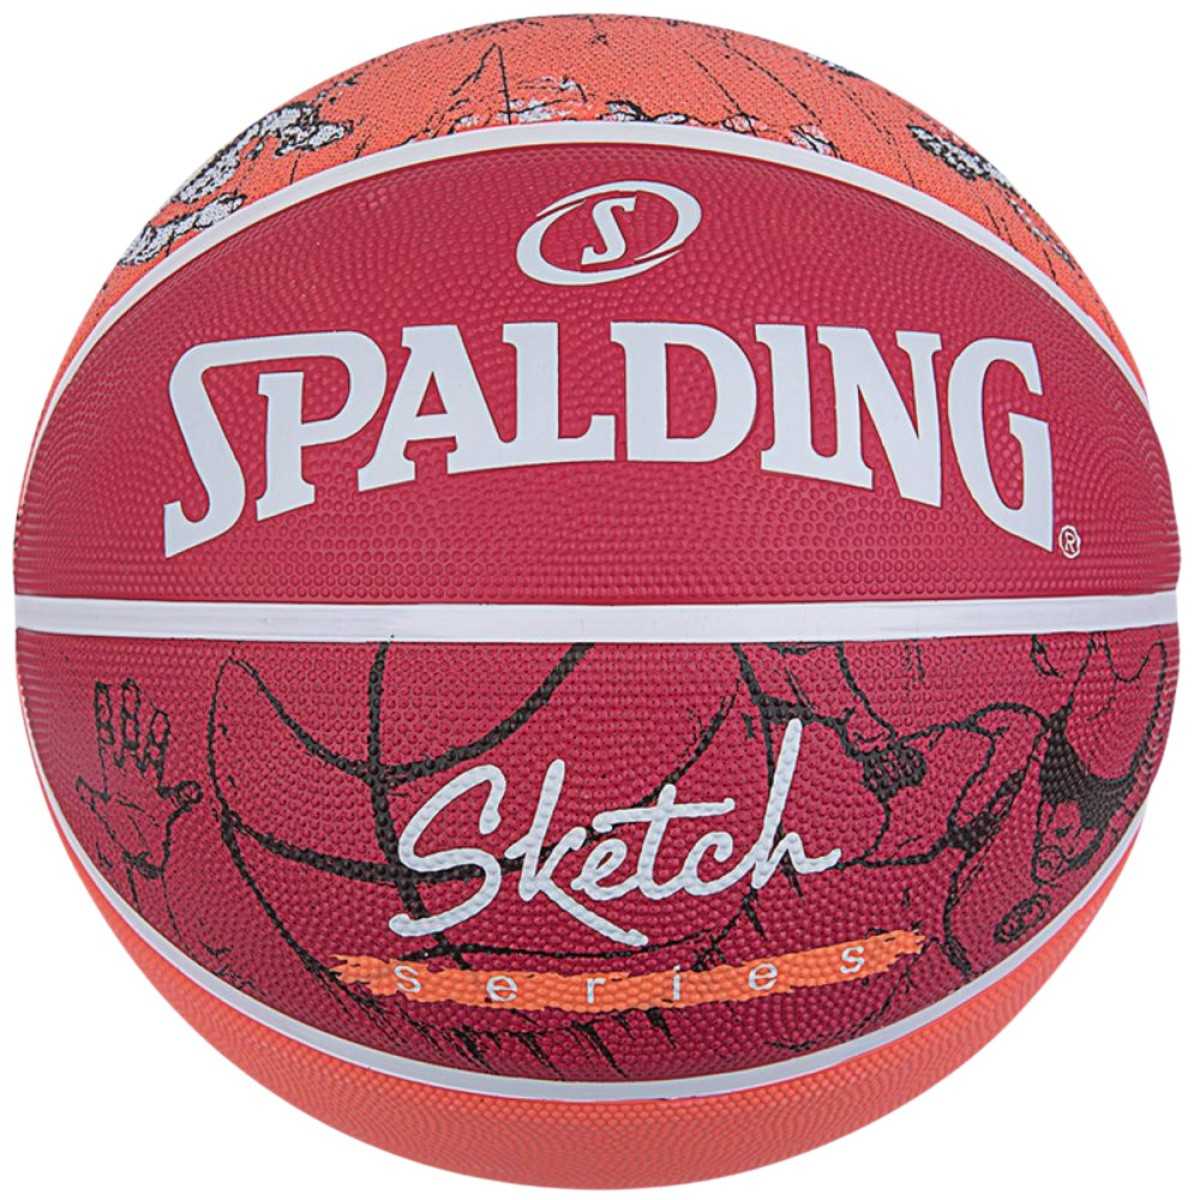 Spalding Sketch Jump krepšinio kamuolys, 7 